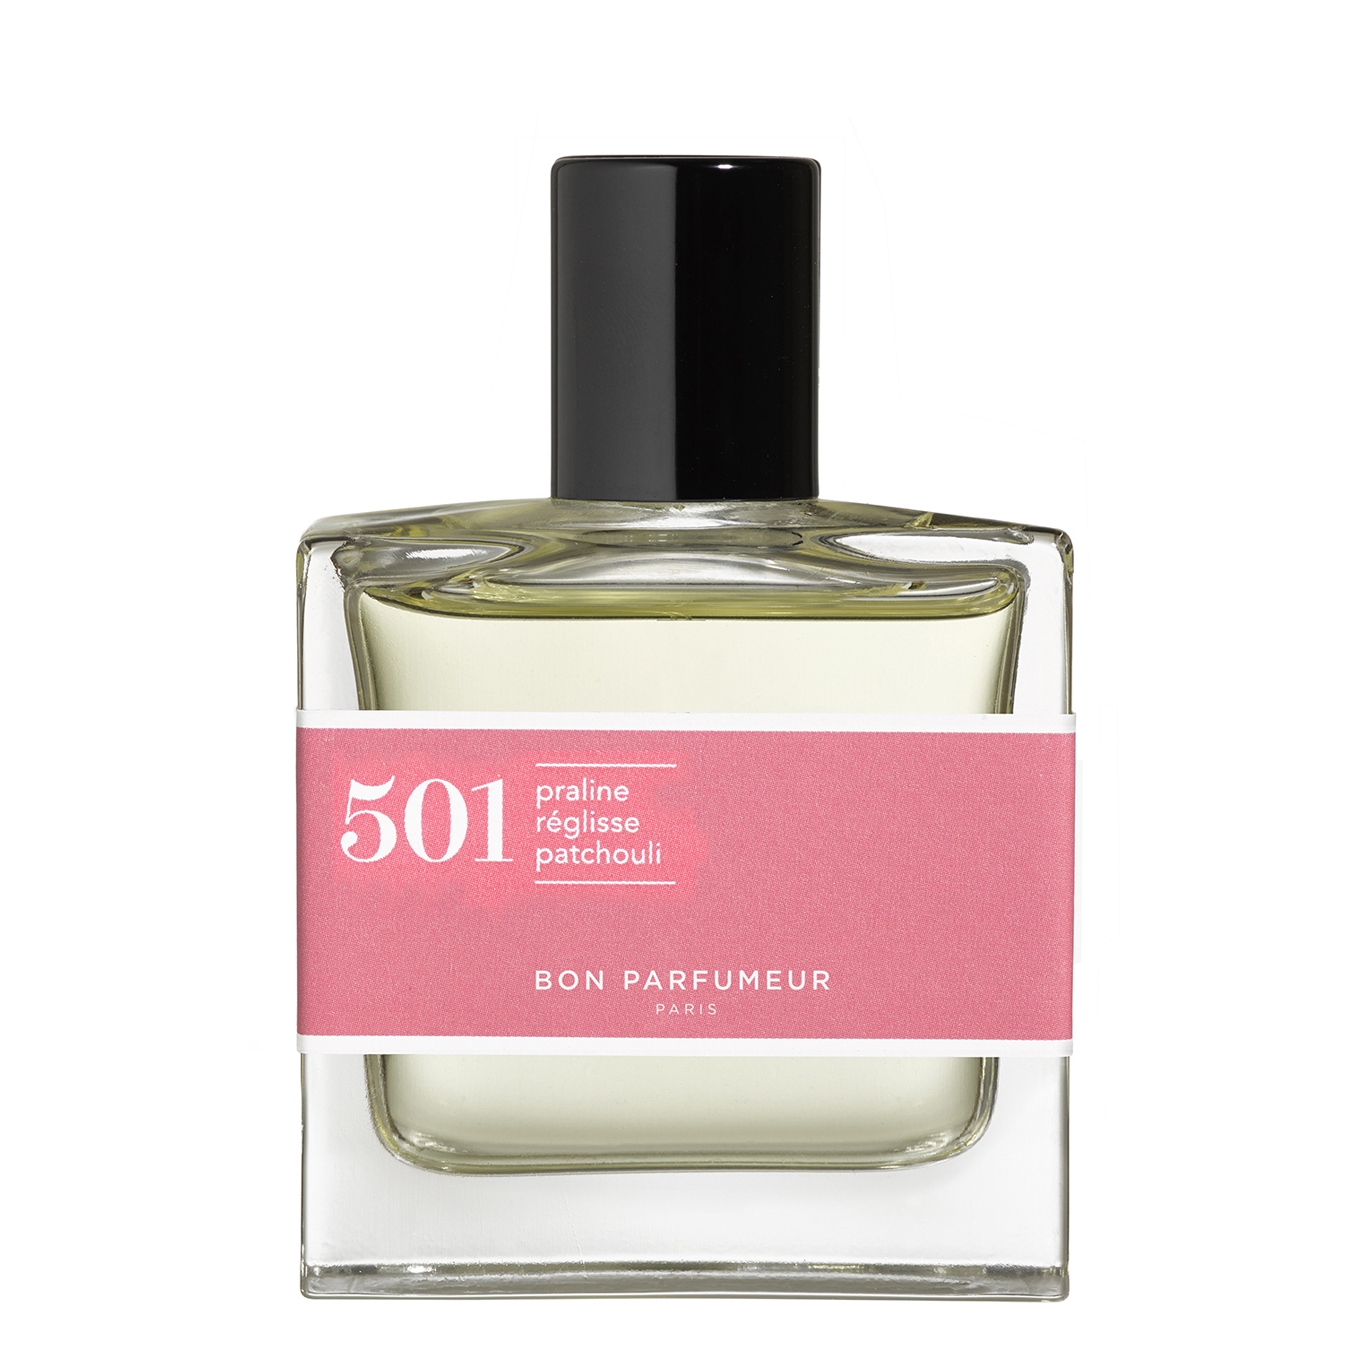 Bon Parfumeur 501 Praline Licorice Patchouli Eau De Parfum 30ml